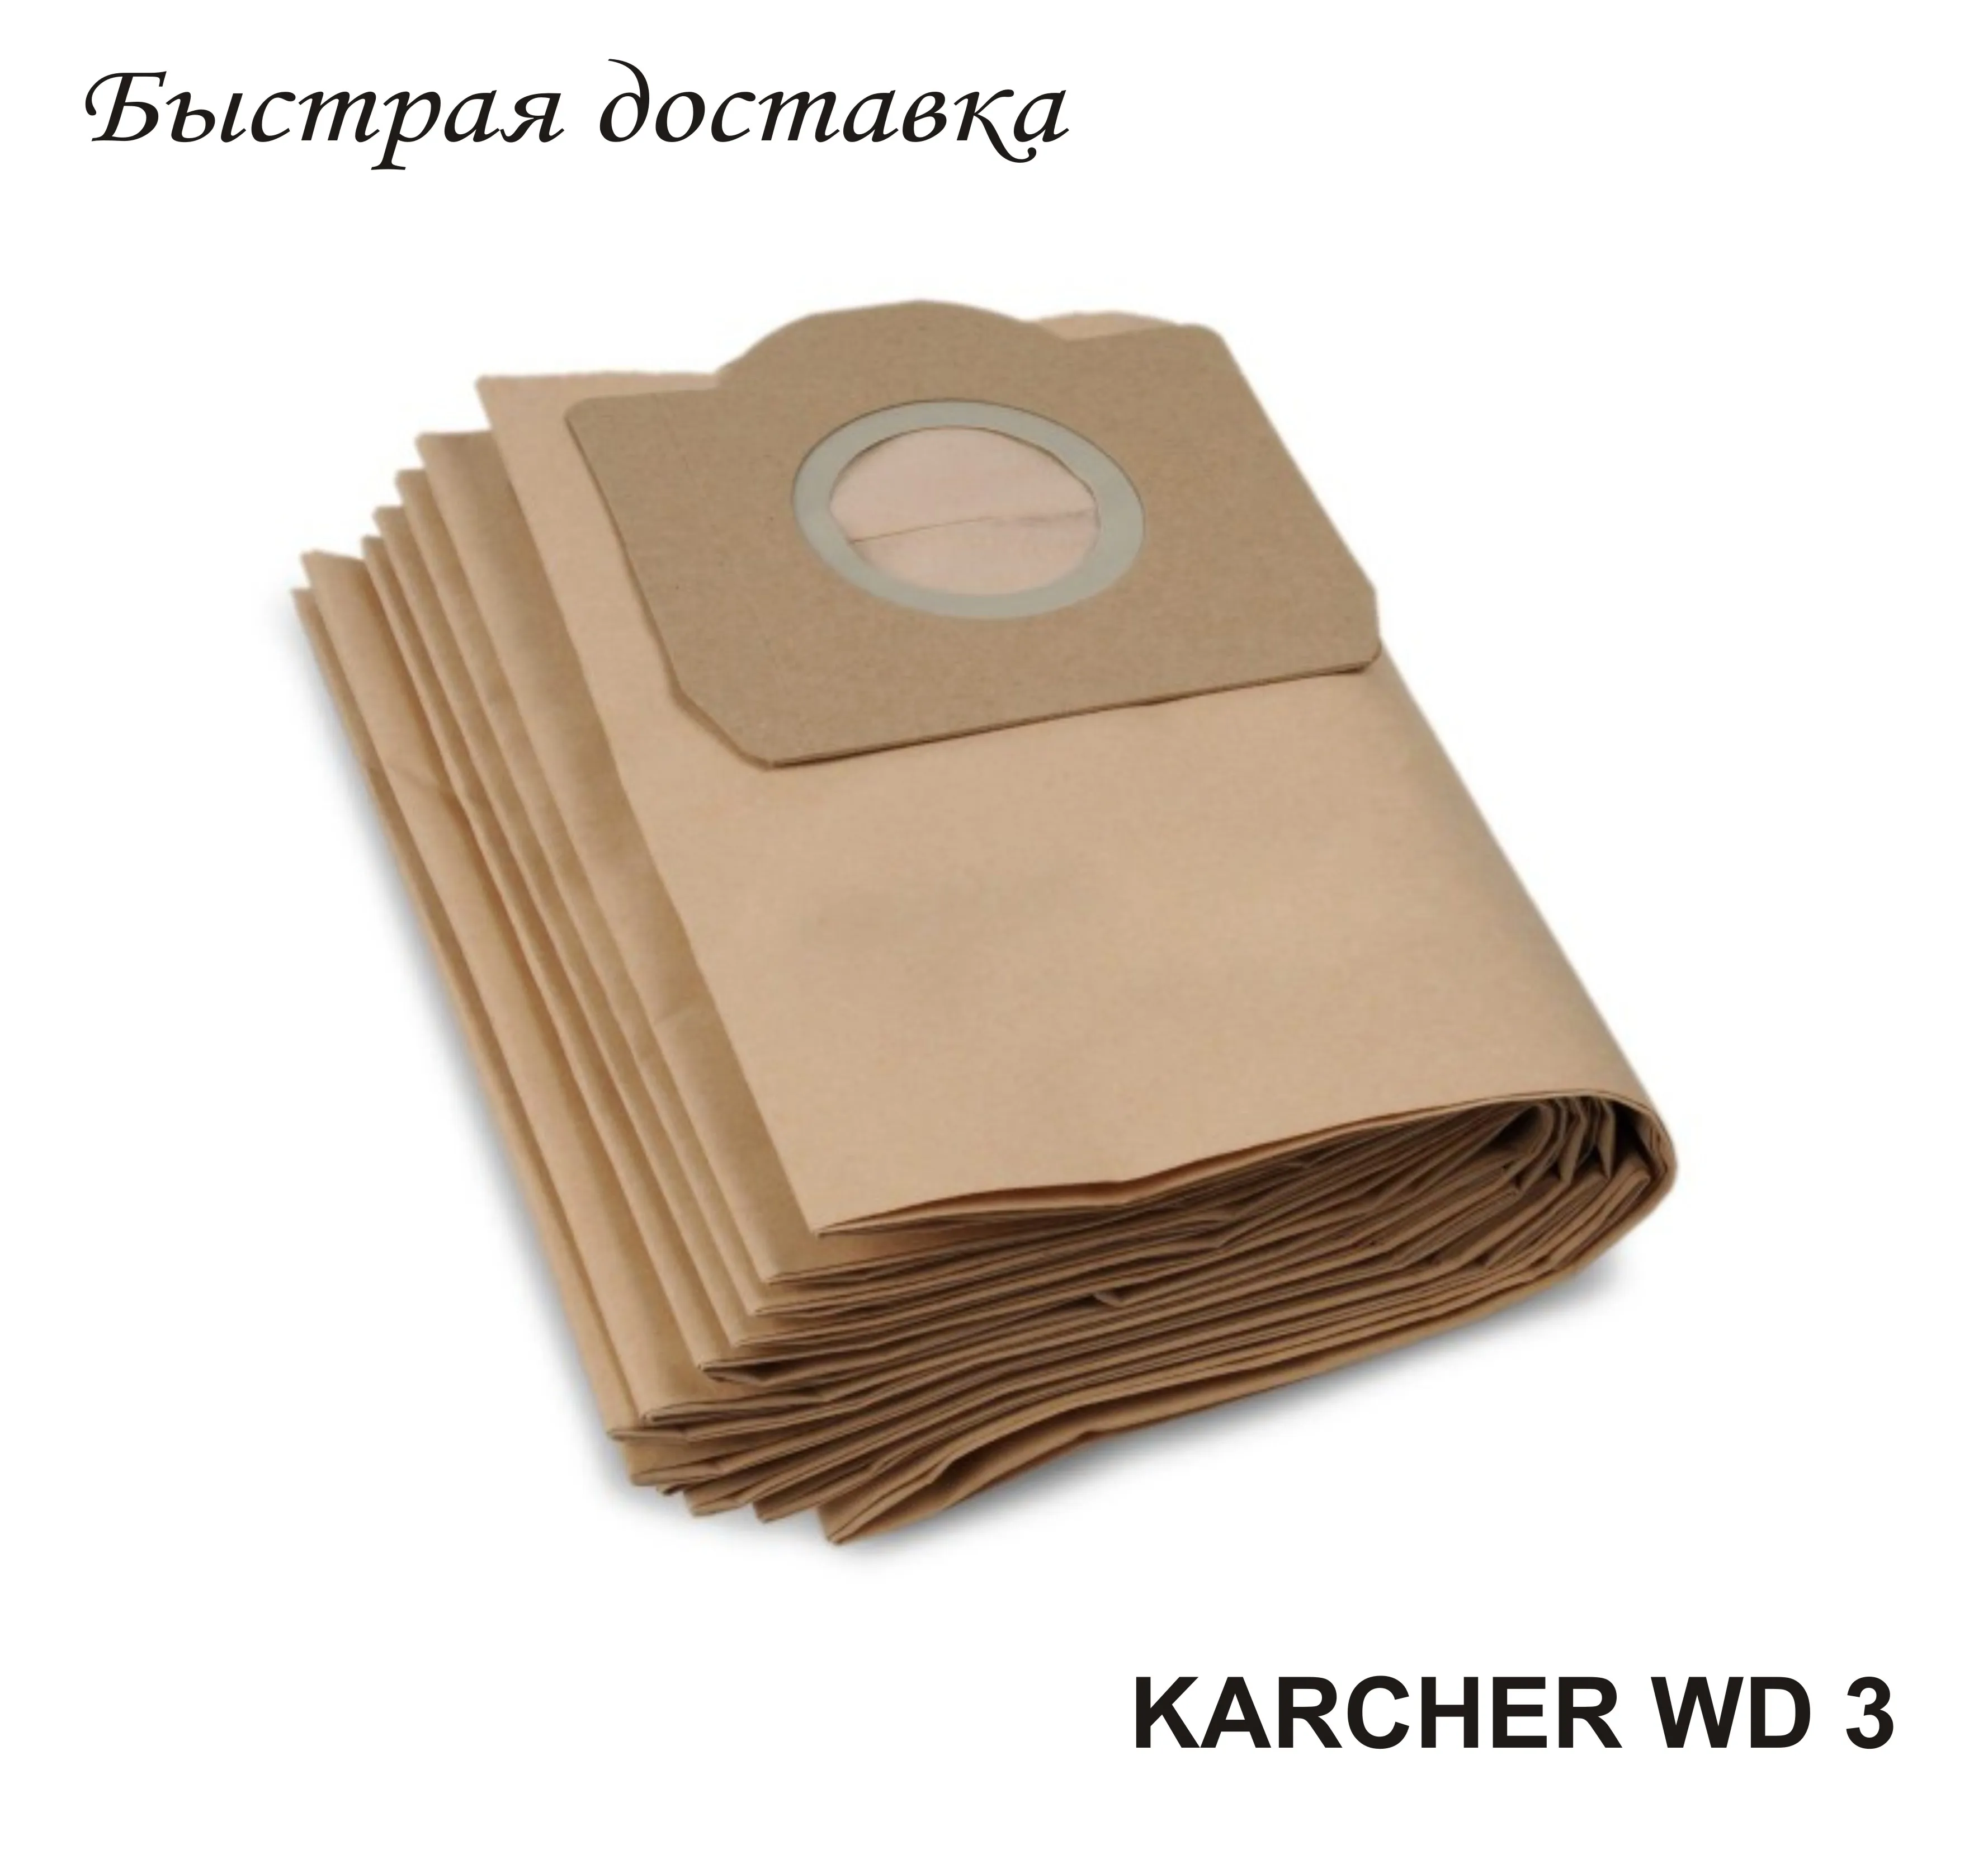 Saci de filtru pentru aspirator serie Karcher wd-3. (5 buc)